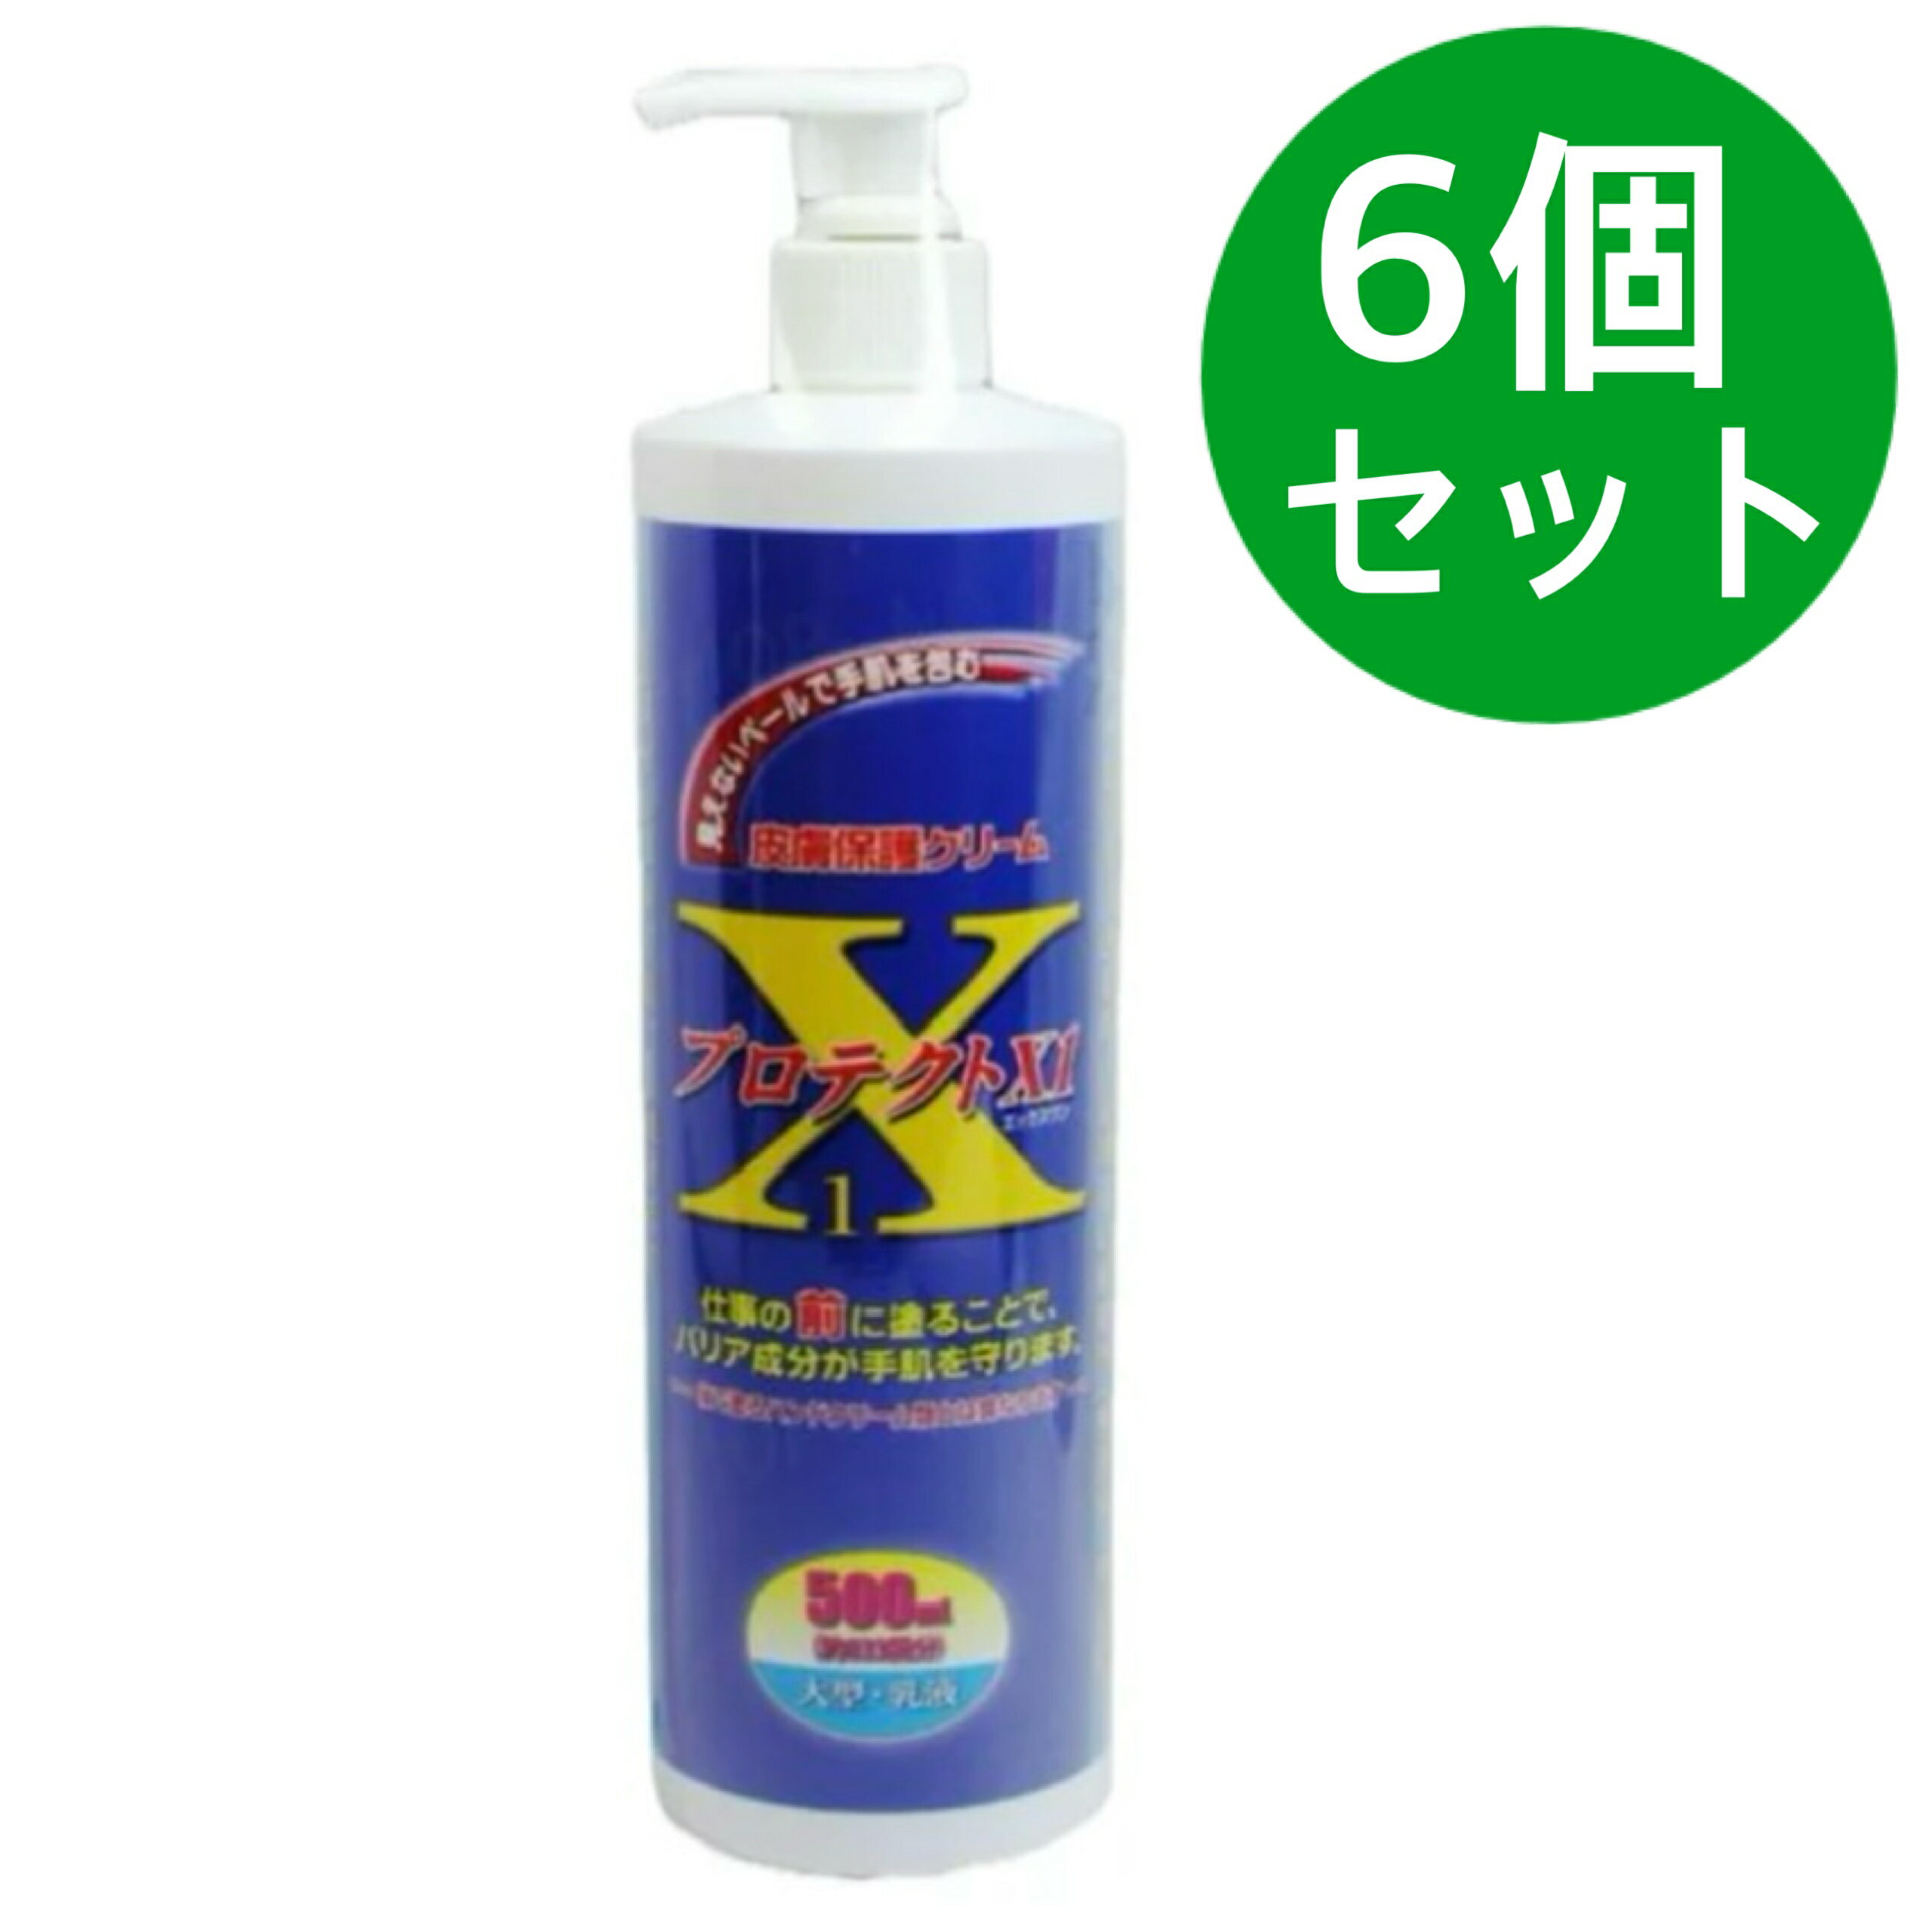 皮膚保護クリーム プロテクトX1 500ml【6個セット】